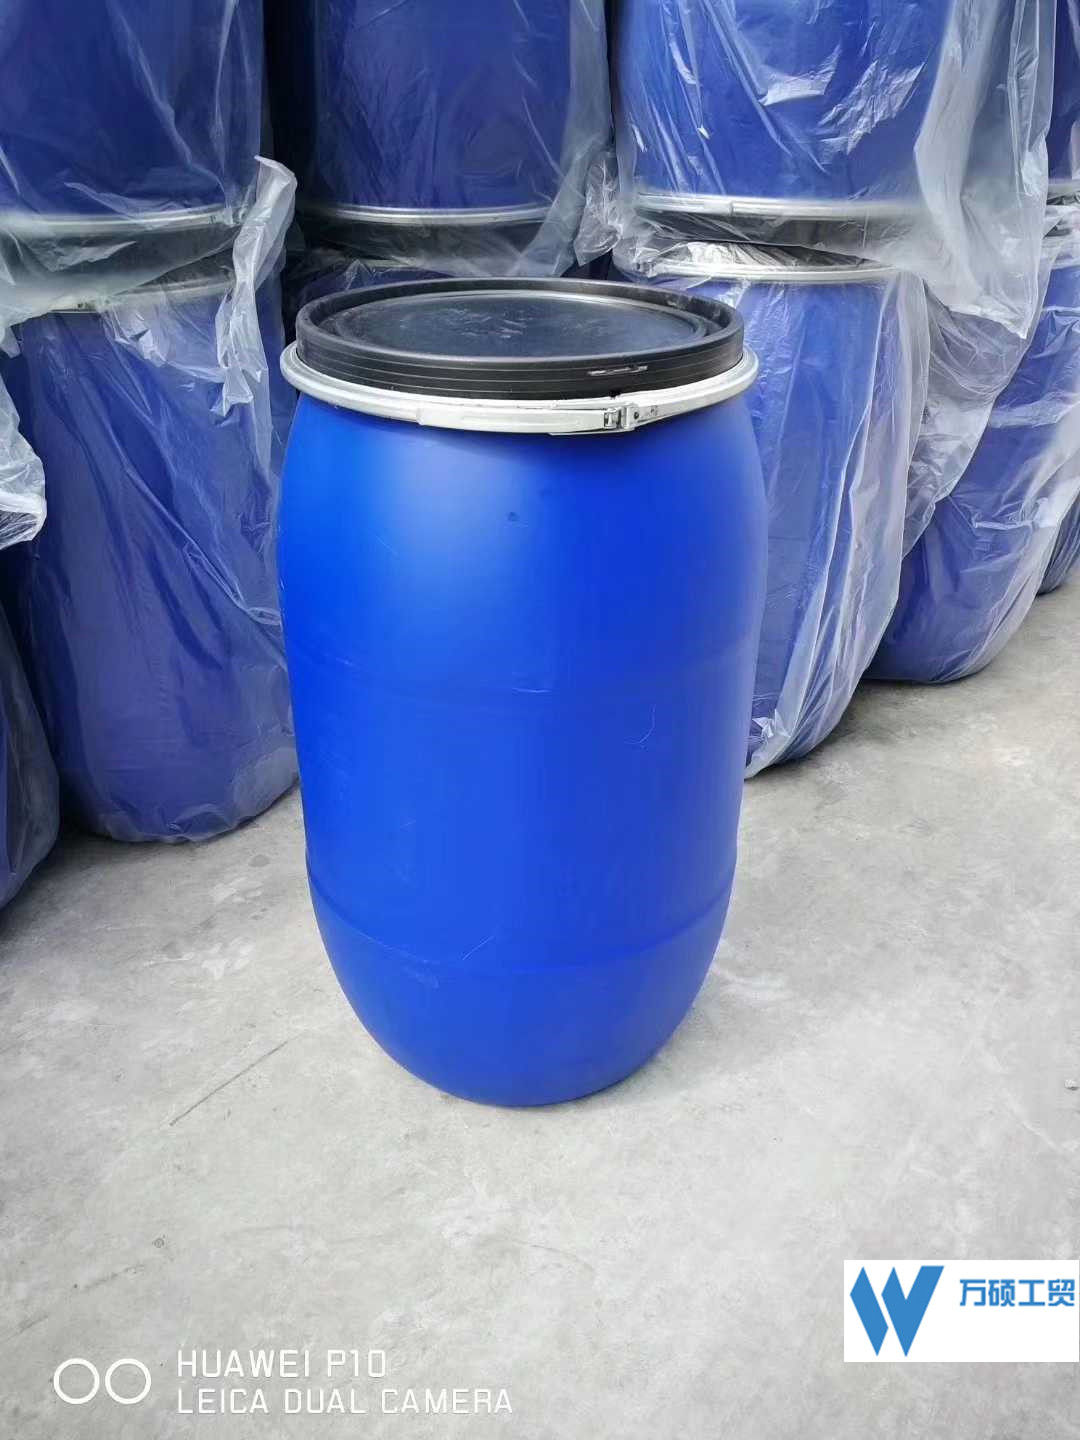 皮重8kg塑料桶|厂商|上海化工塑料桶